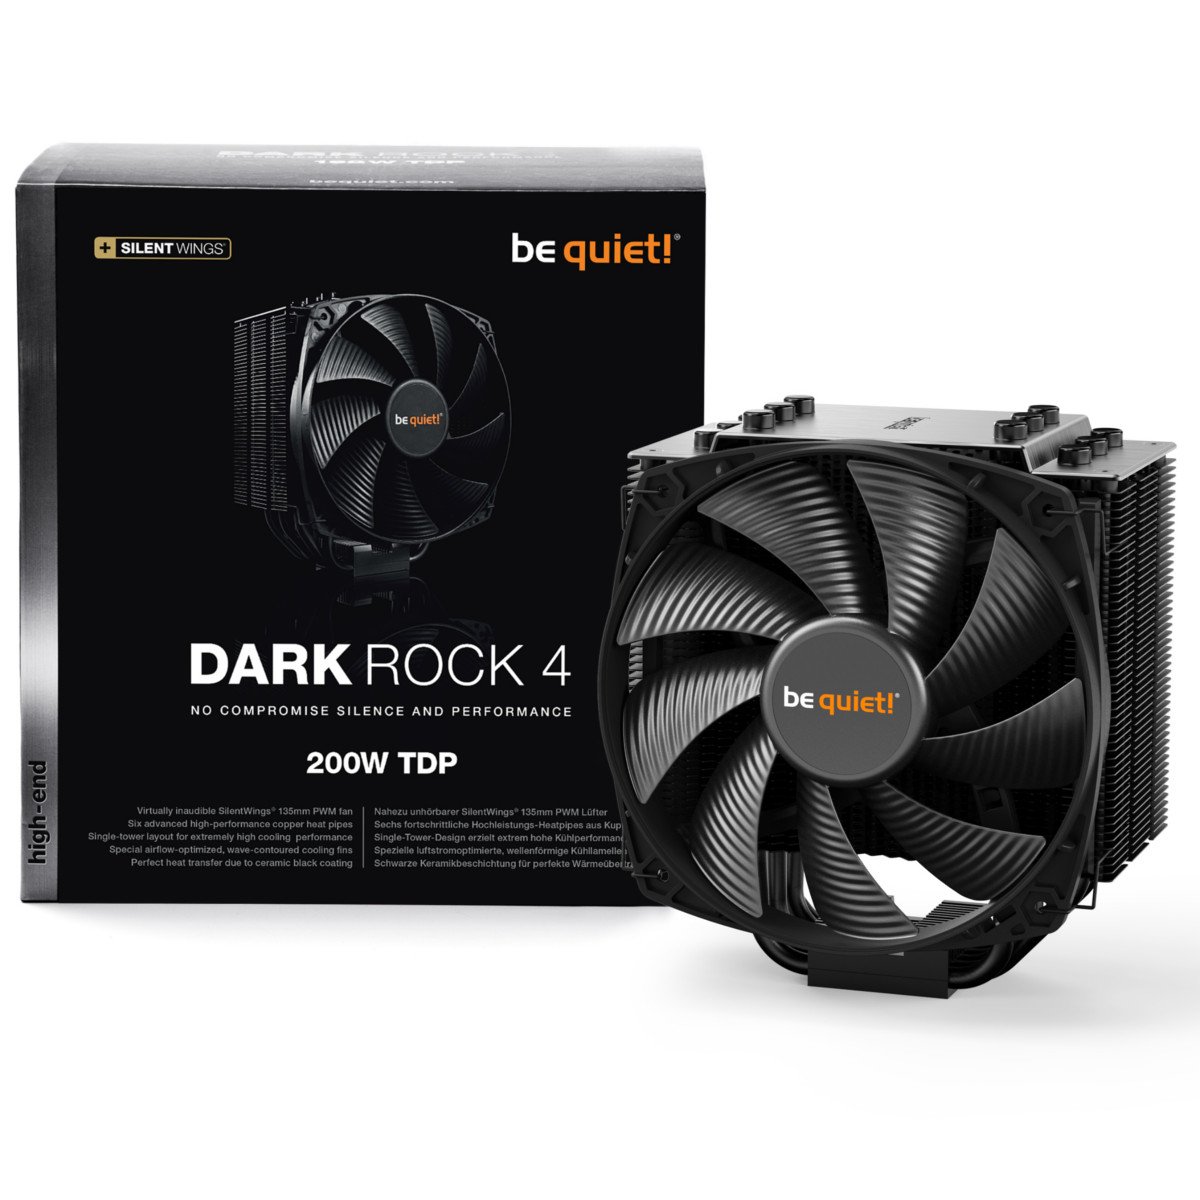 be quiet! Dark Rock 4 CPU Cooler